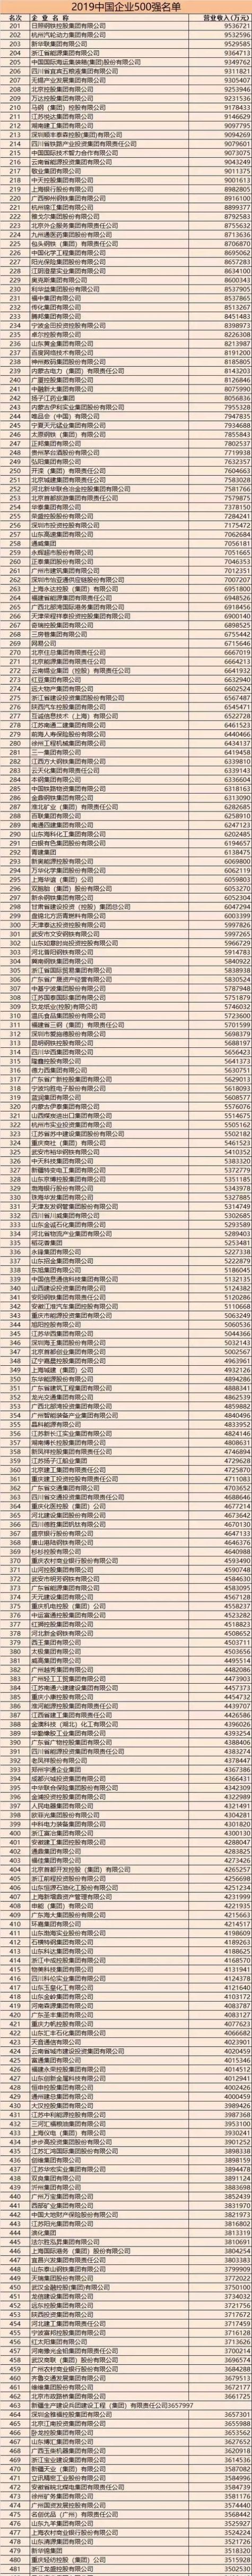 2019年中国企业500强排行榜榜单